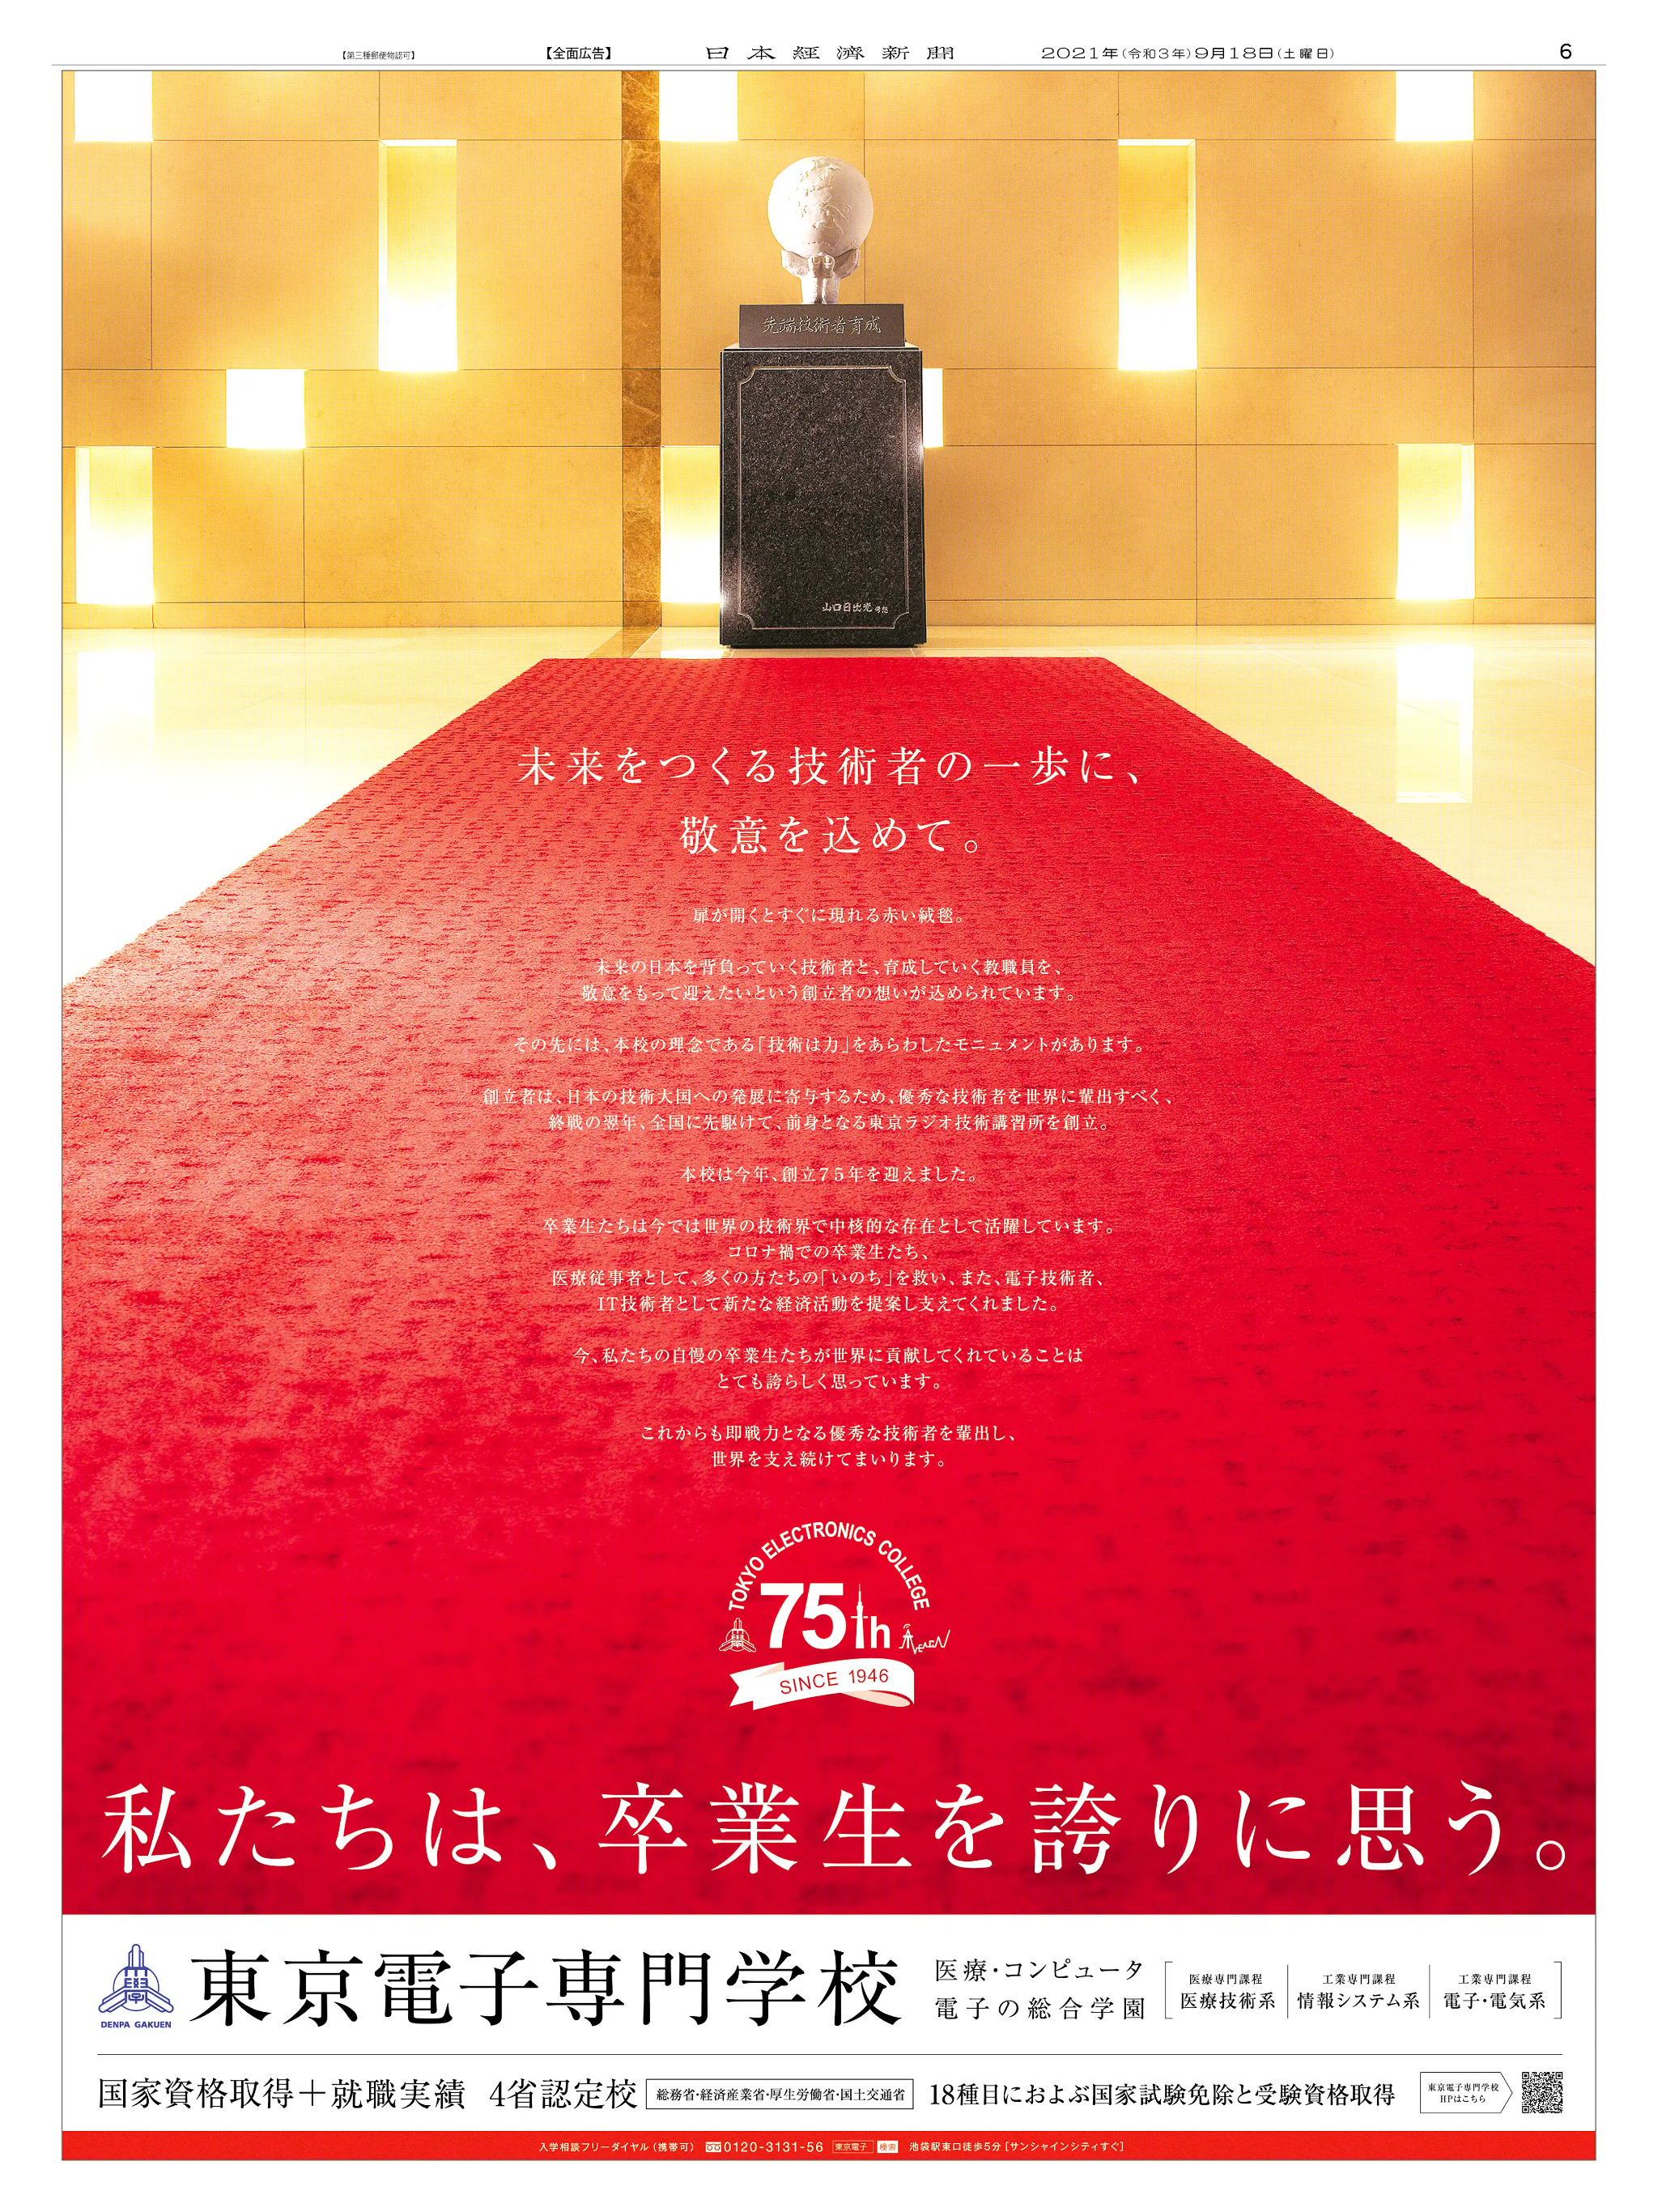 周年記念広告事例 「東京電子専門学校 創立75周年」